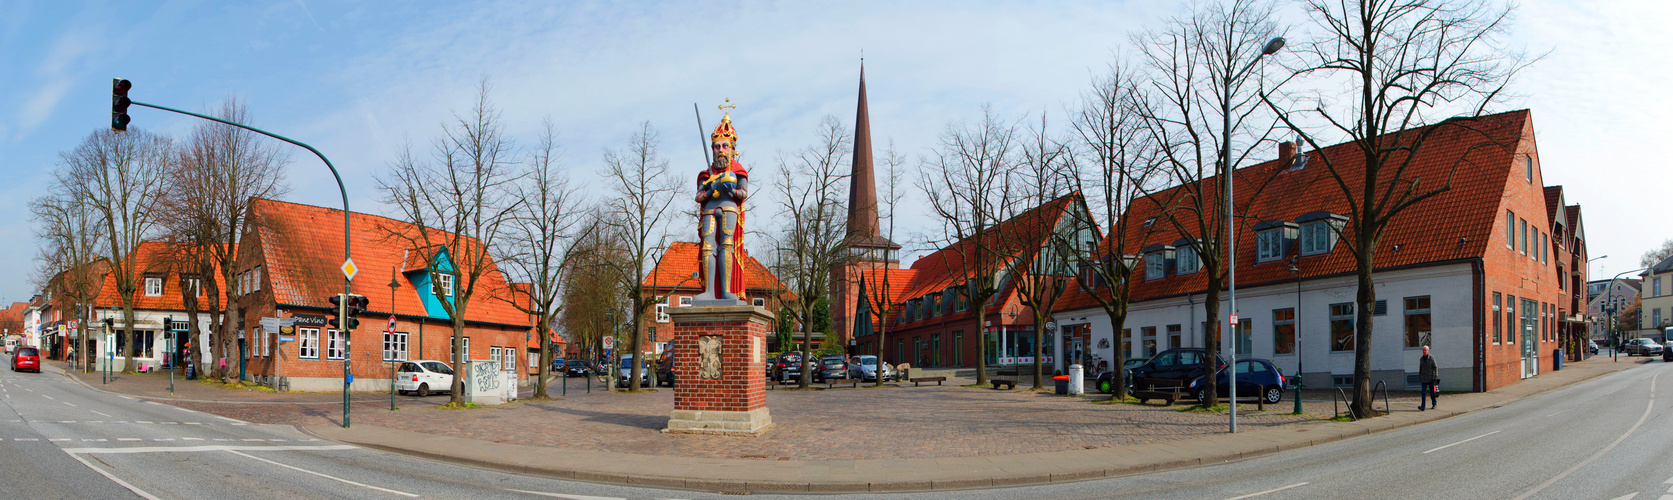 Wedeler Marktplatz mit Roland und Kirchturm